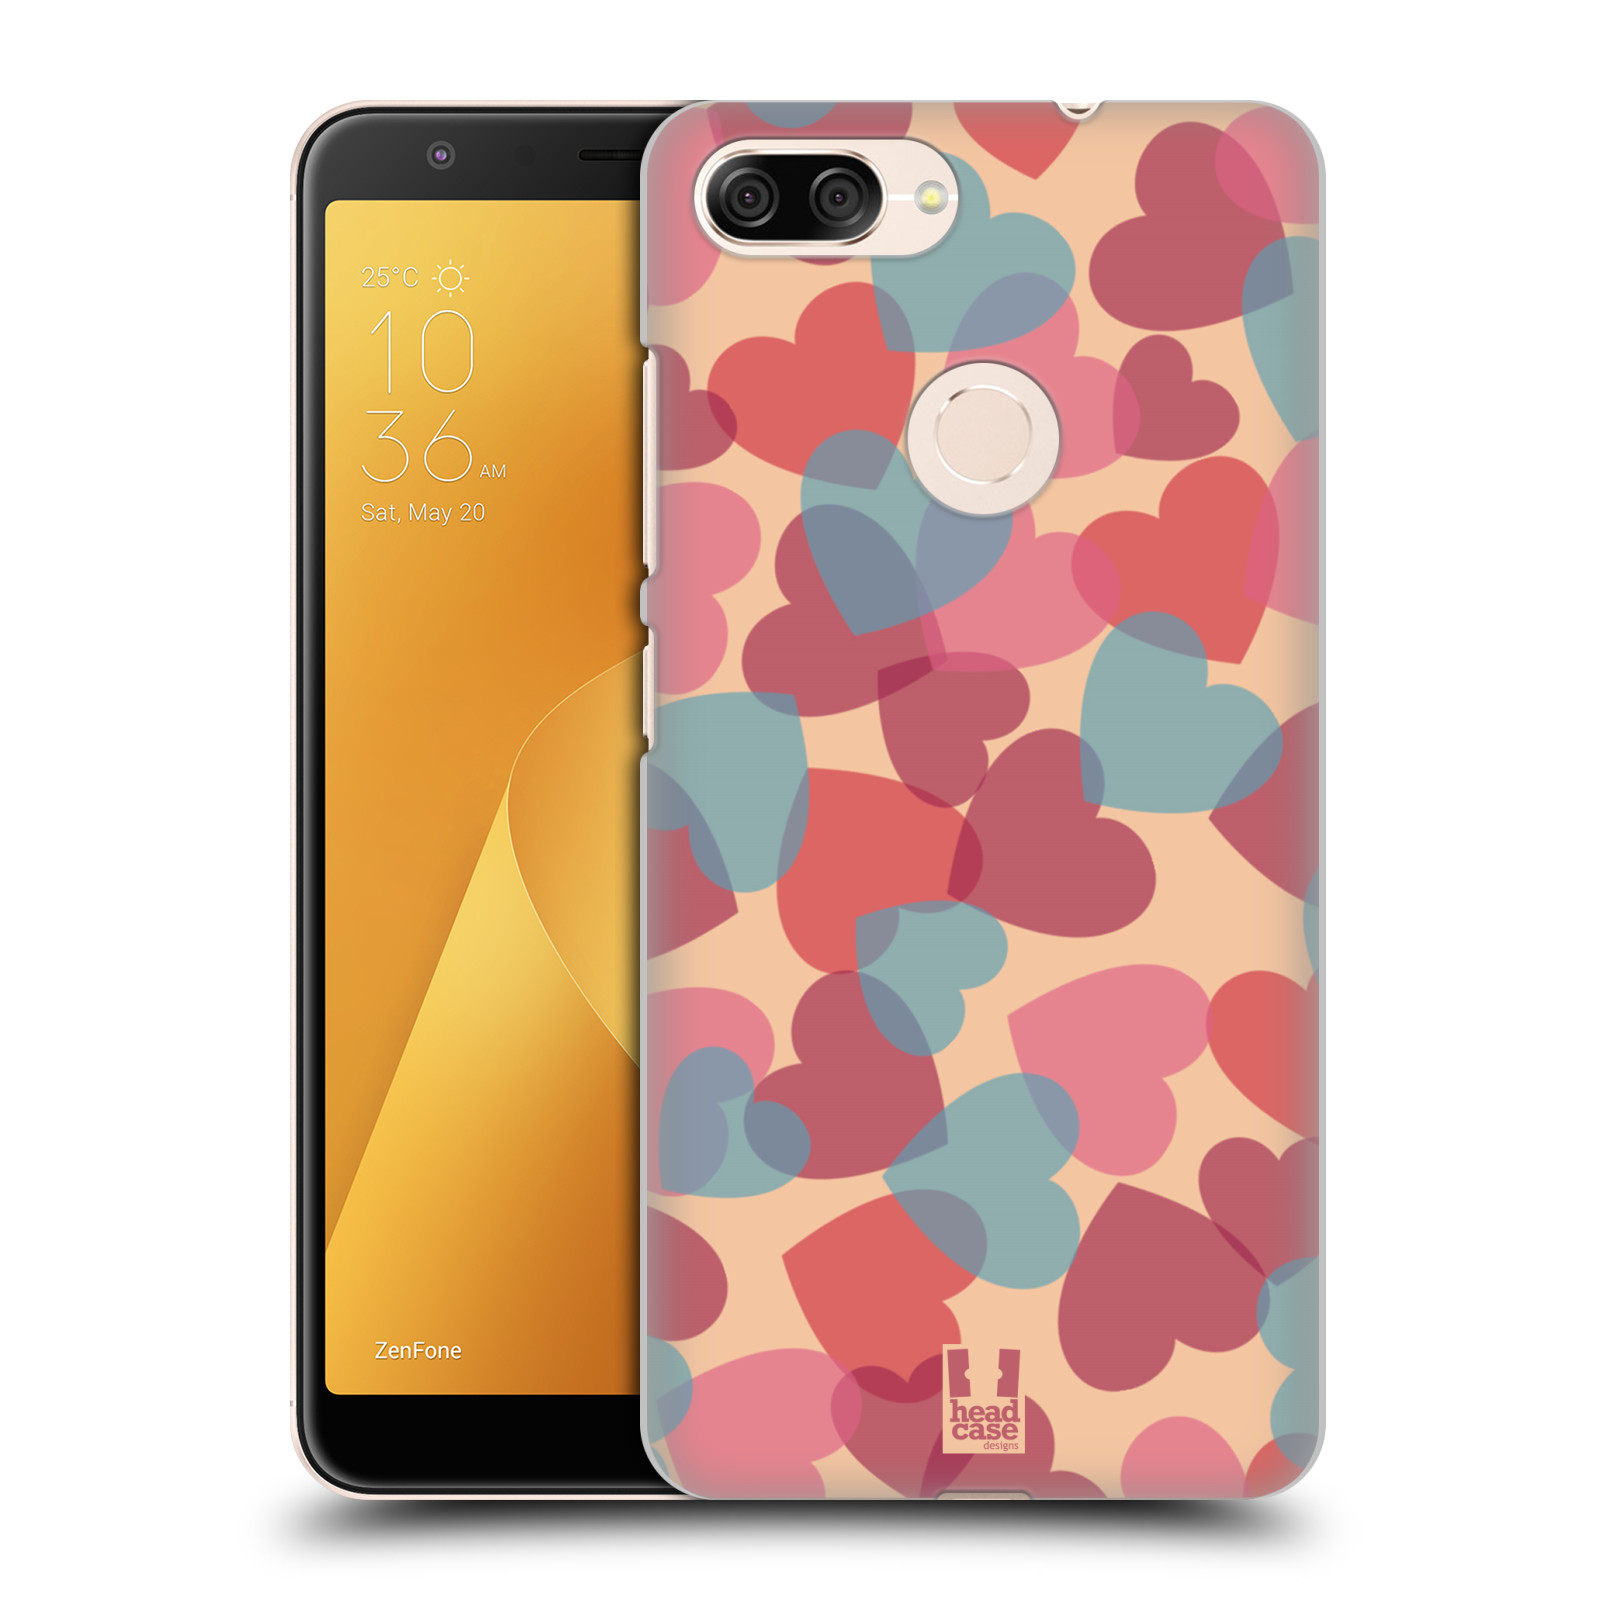 Zadní obal pro mobil Asus Zenfone Max Plus (M1) - HEAD CASE - Růžová srdíčka kreslený vzor